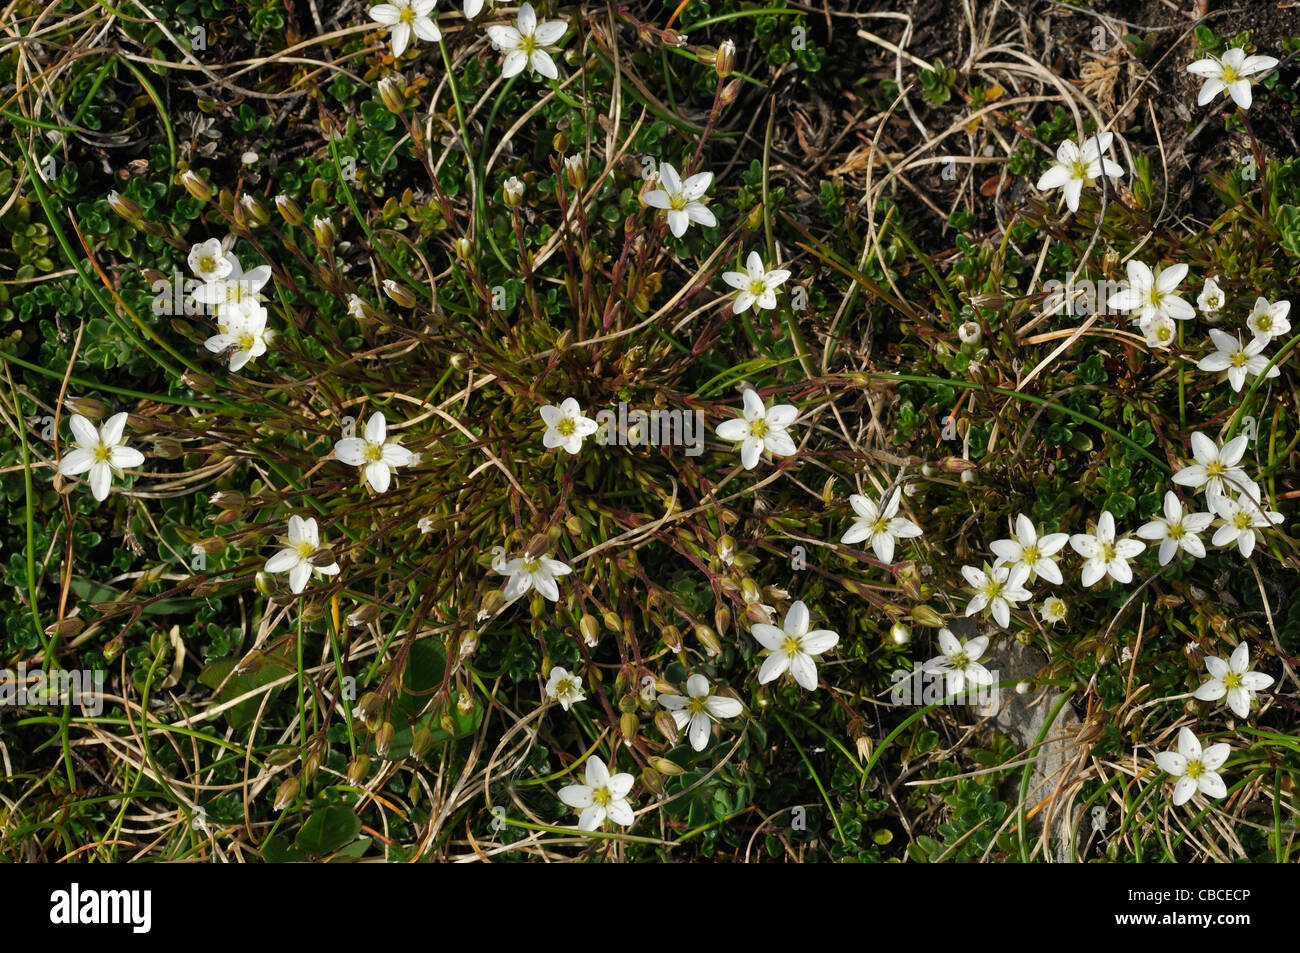 Mossy Saxifrage - Saxifraga hypnoides Stock Photo